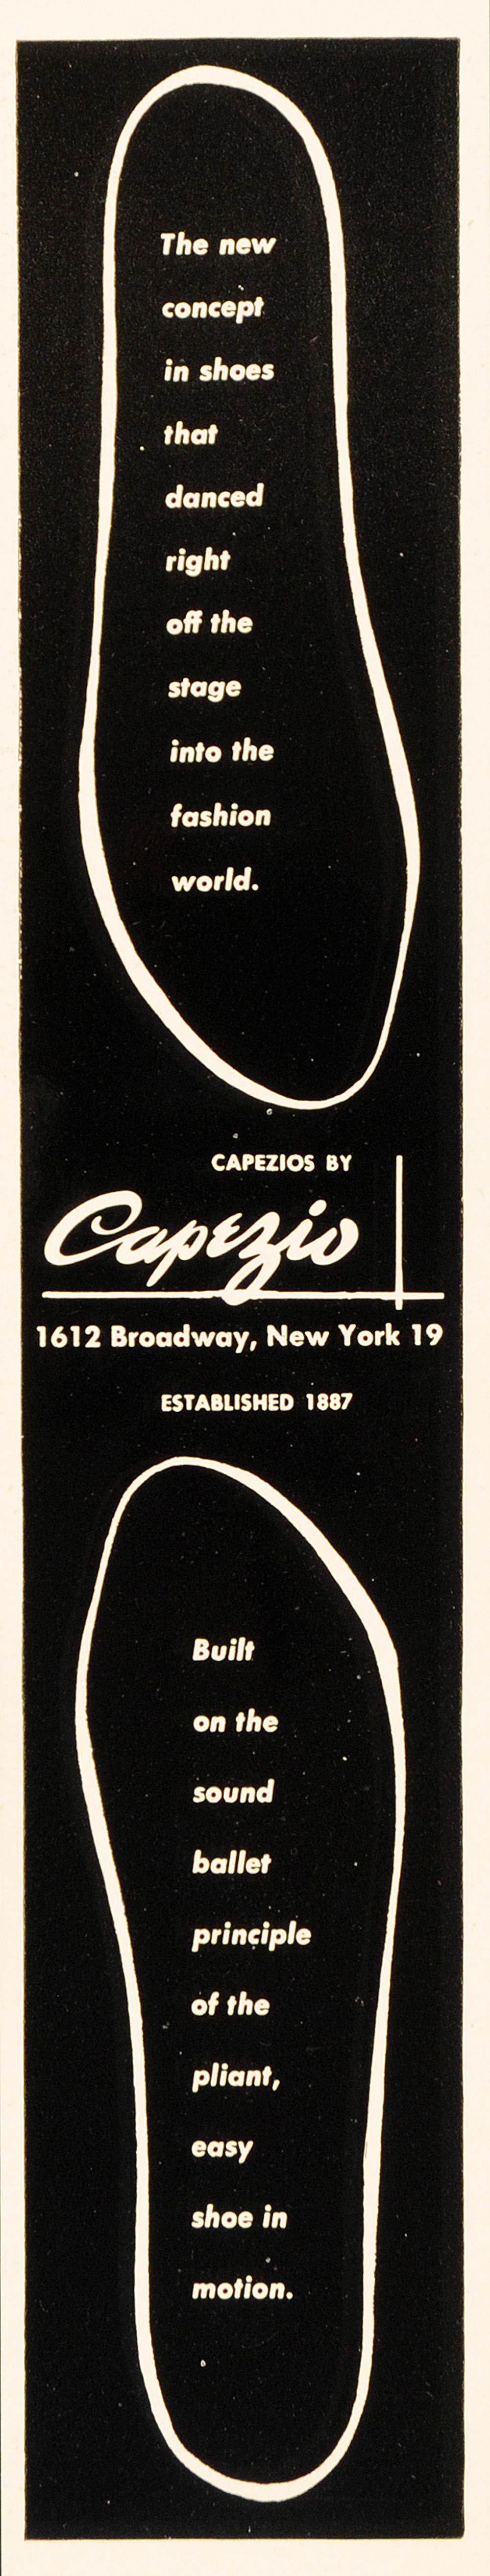 1948 Ad Vintage Capezio Dance Shoes Fashion Shoe Sole Ballet 1612 Broadway NYC